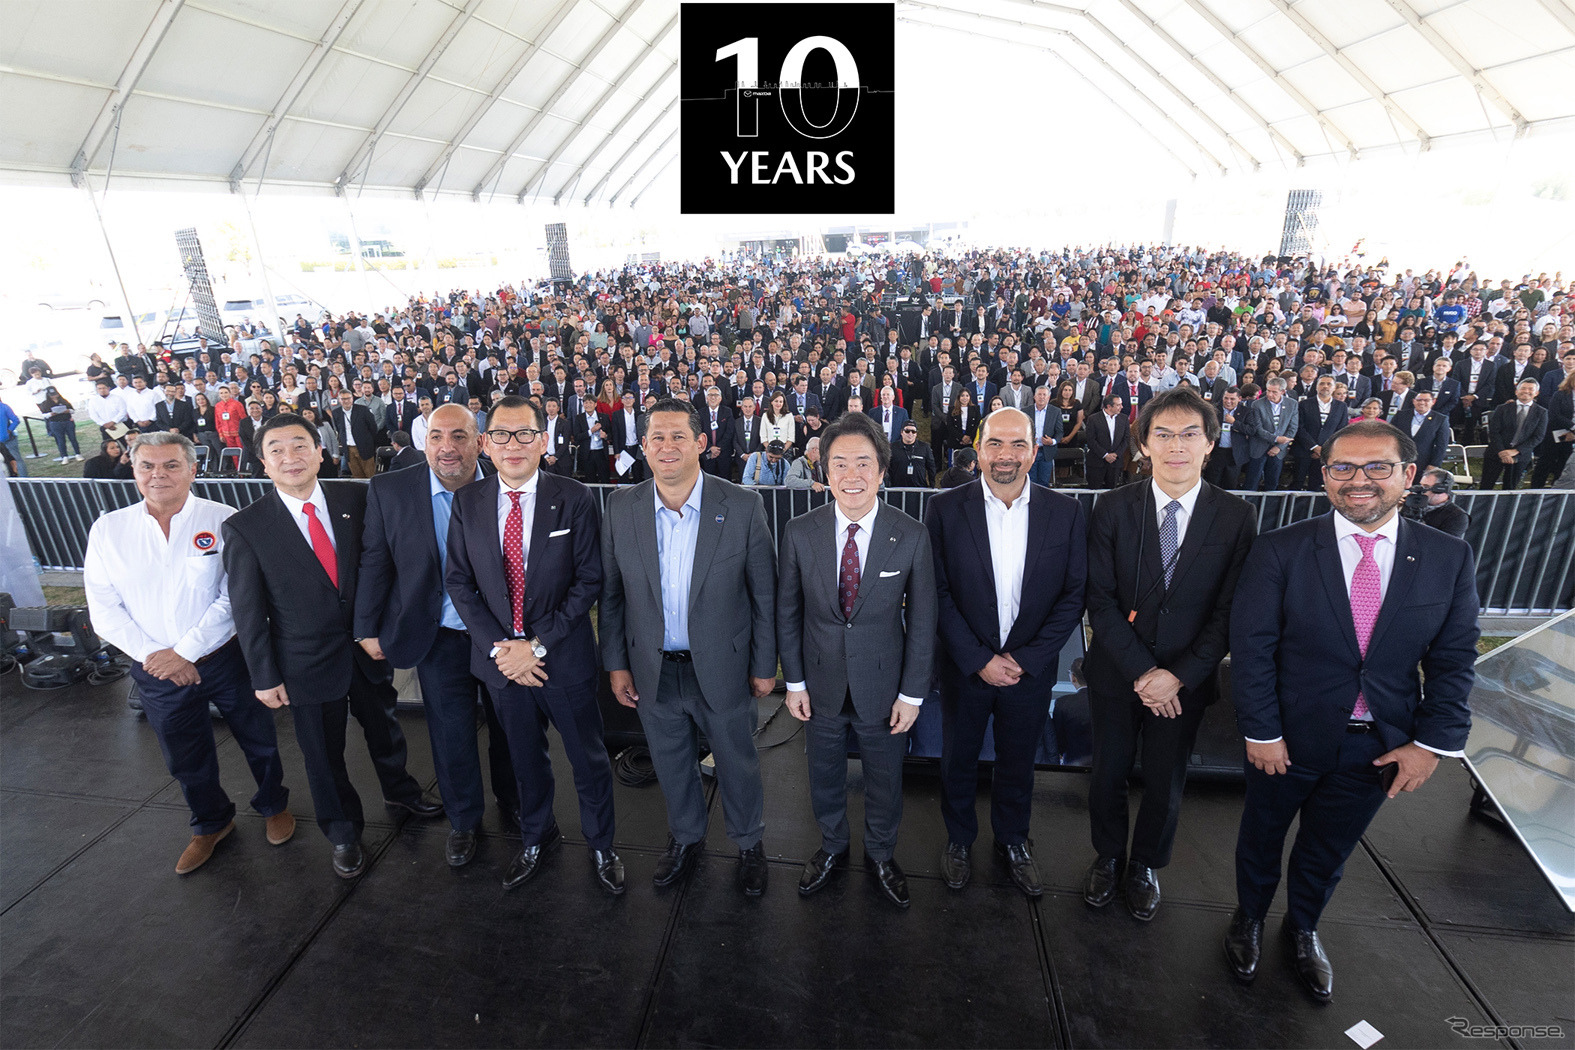 マツダのメキシコ工場の操業開始10周年記念式典